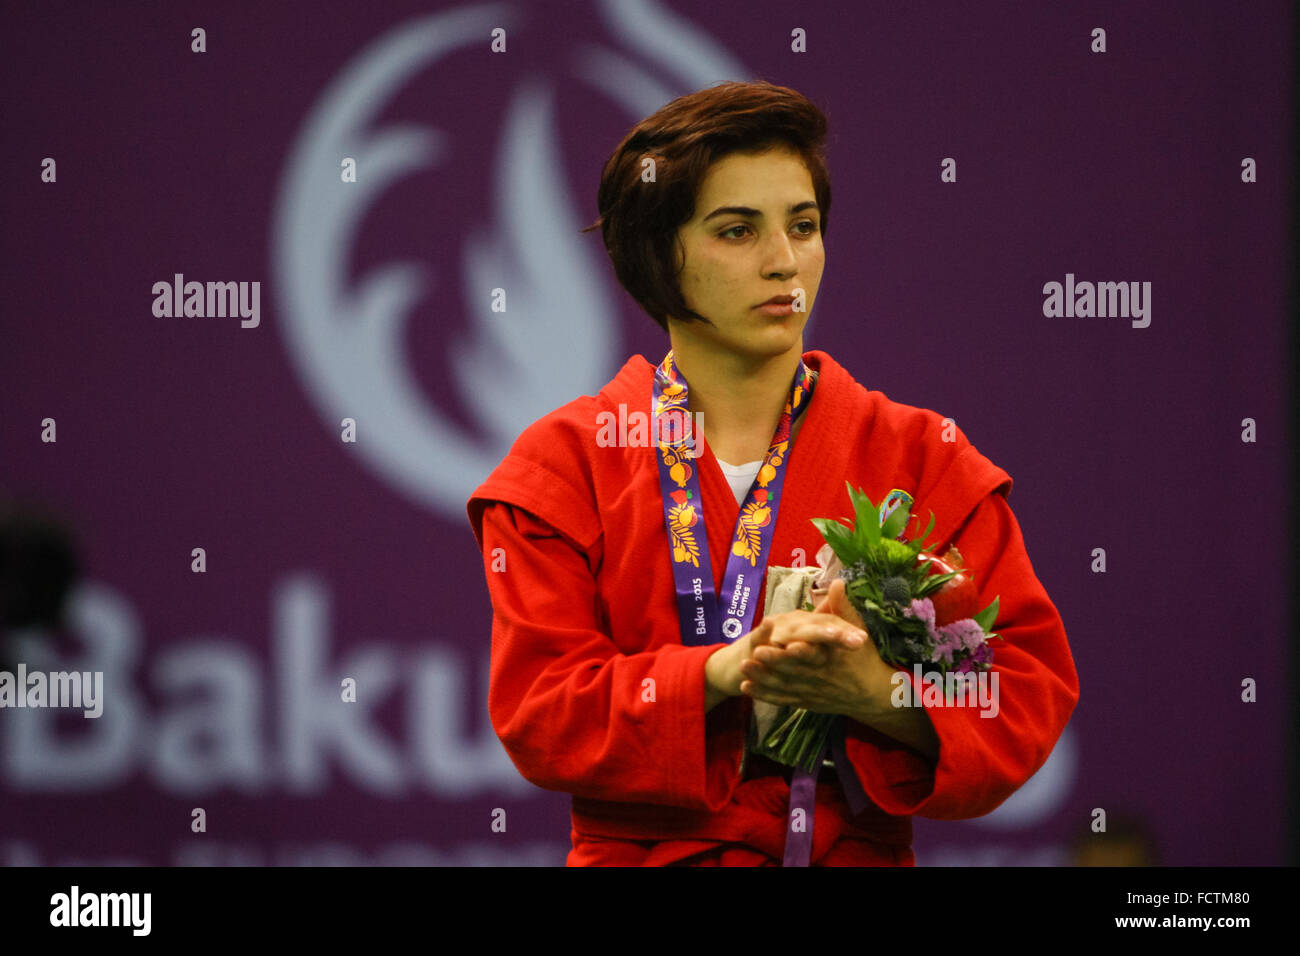 Nazakat Khalilova (AZE) ist ihr Silber Medaille überreicht. Siegerehrung Frauen 52kg. Sambo. Heydar Aliyev Arena. Baku2015. 1. Europäische Spiele. Baku. Aserbaidschan. 22.06.2015 Stockfoto